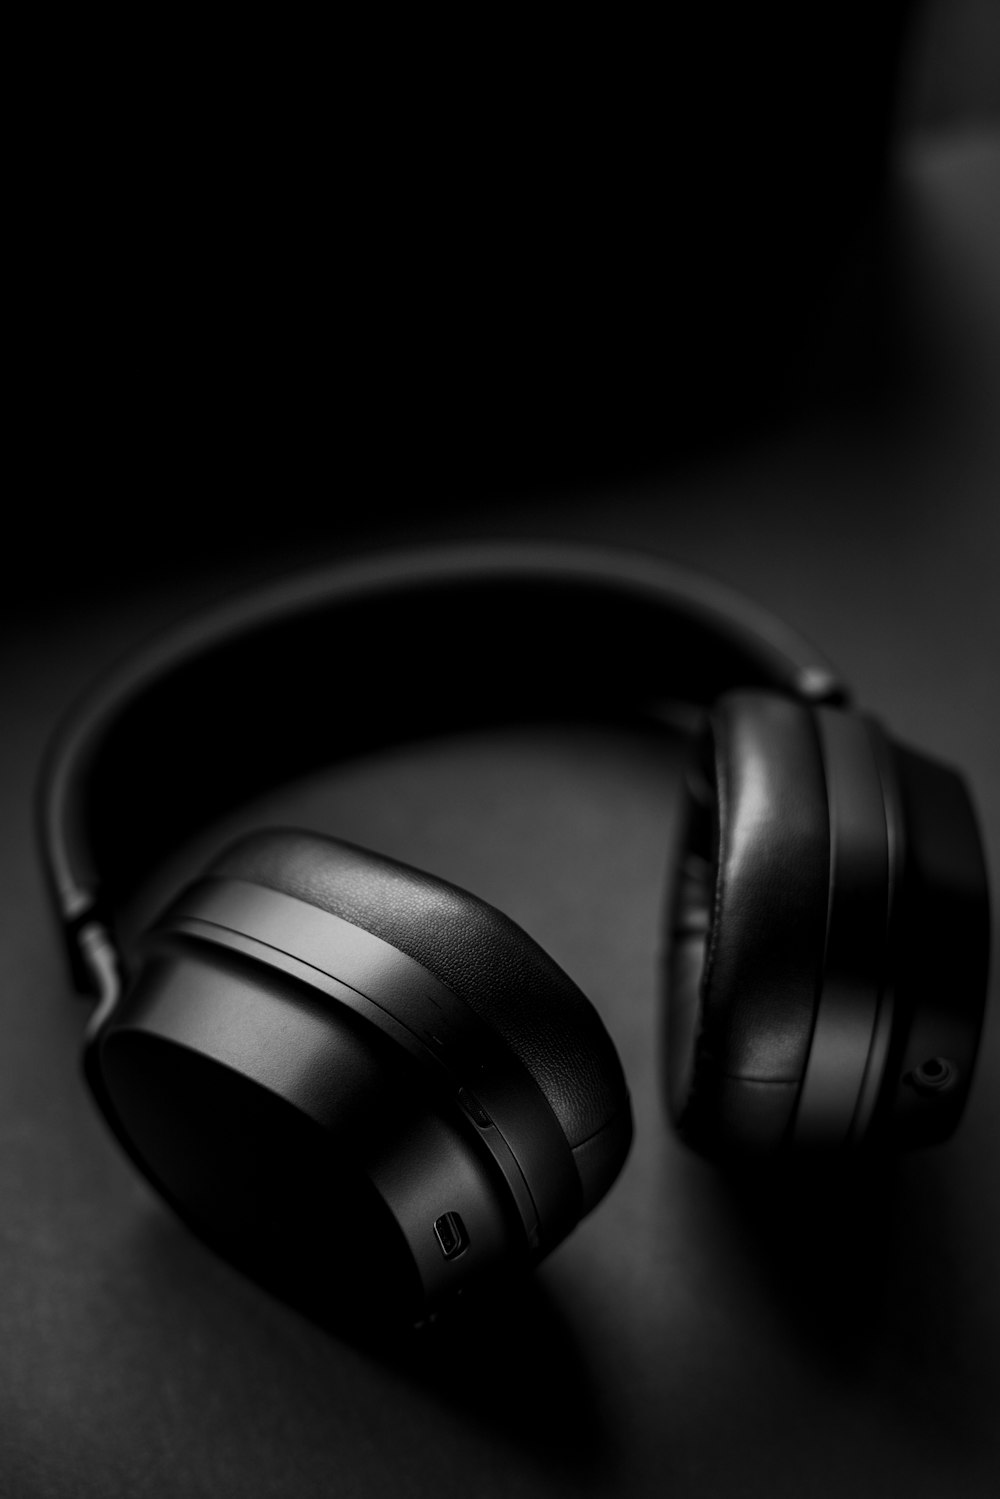 black headphones on black surface